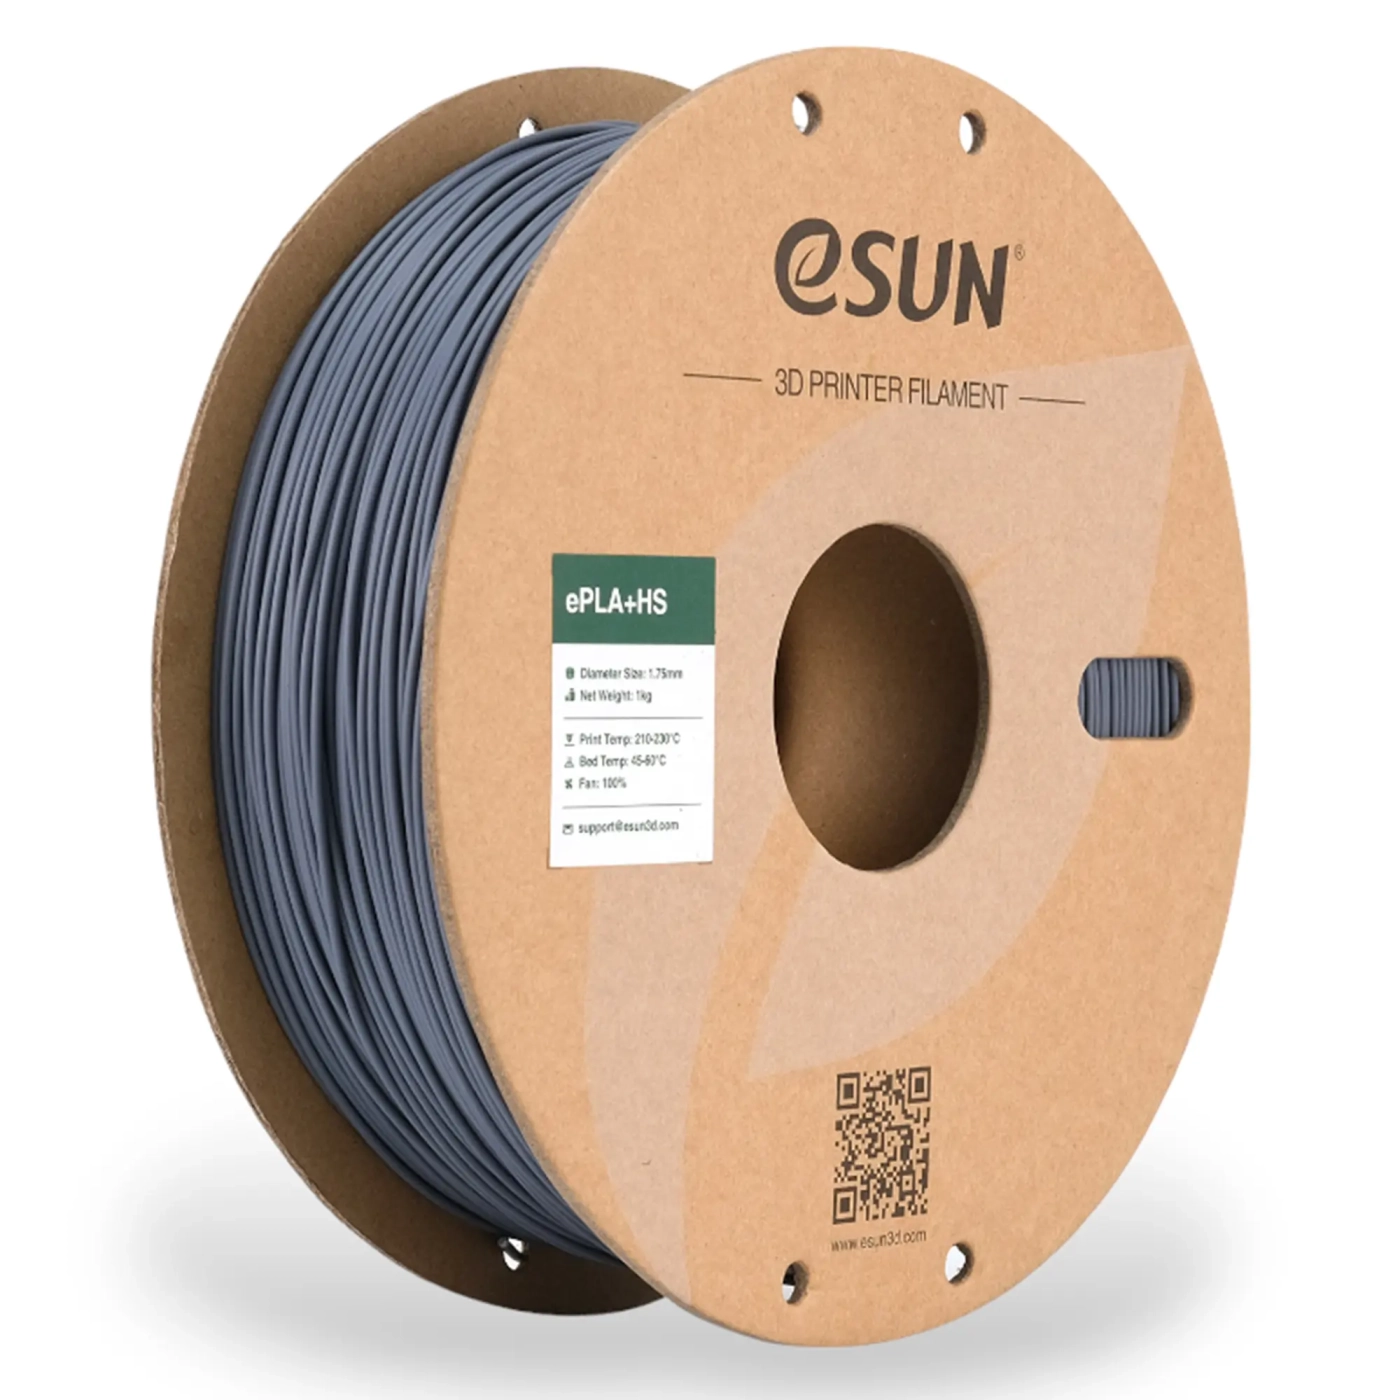 Купить ePLA-HS Filament (пластик) для 3D принтера eSUN 1кг, 1.75мм, серый (EPLA-HS-P175H1) - фото 1